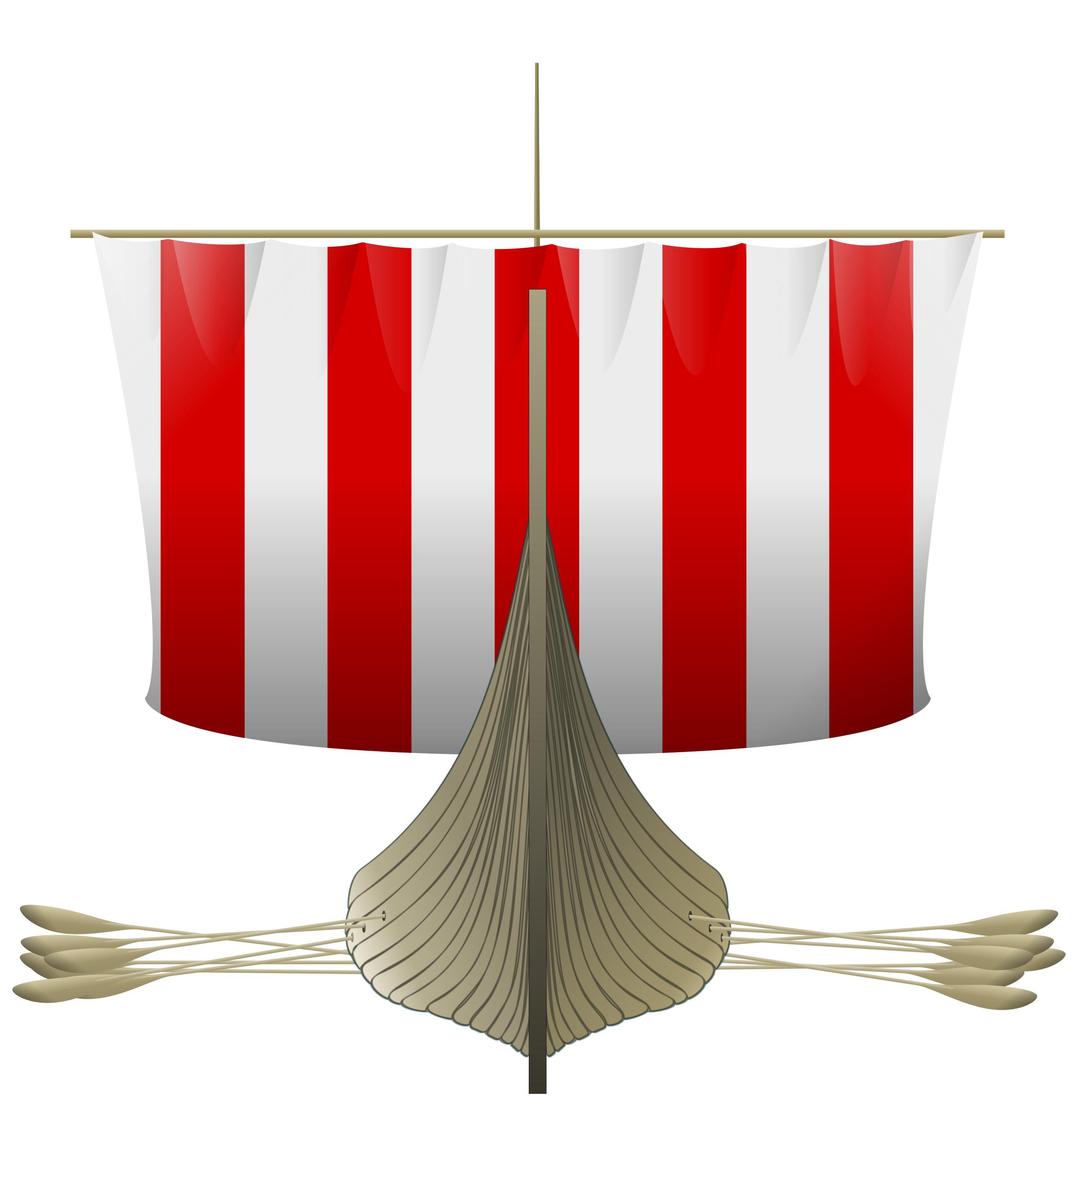 Viking Longship png transparent